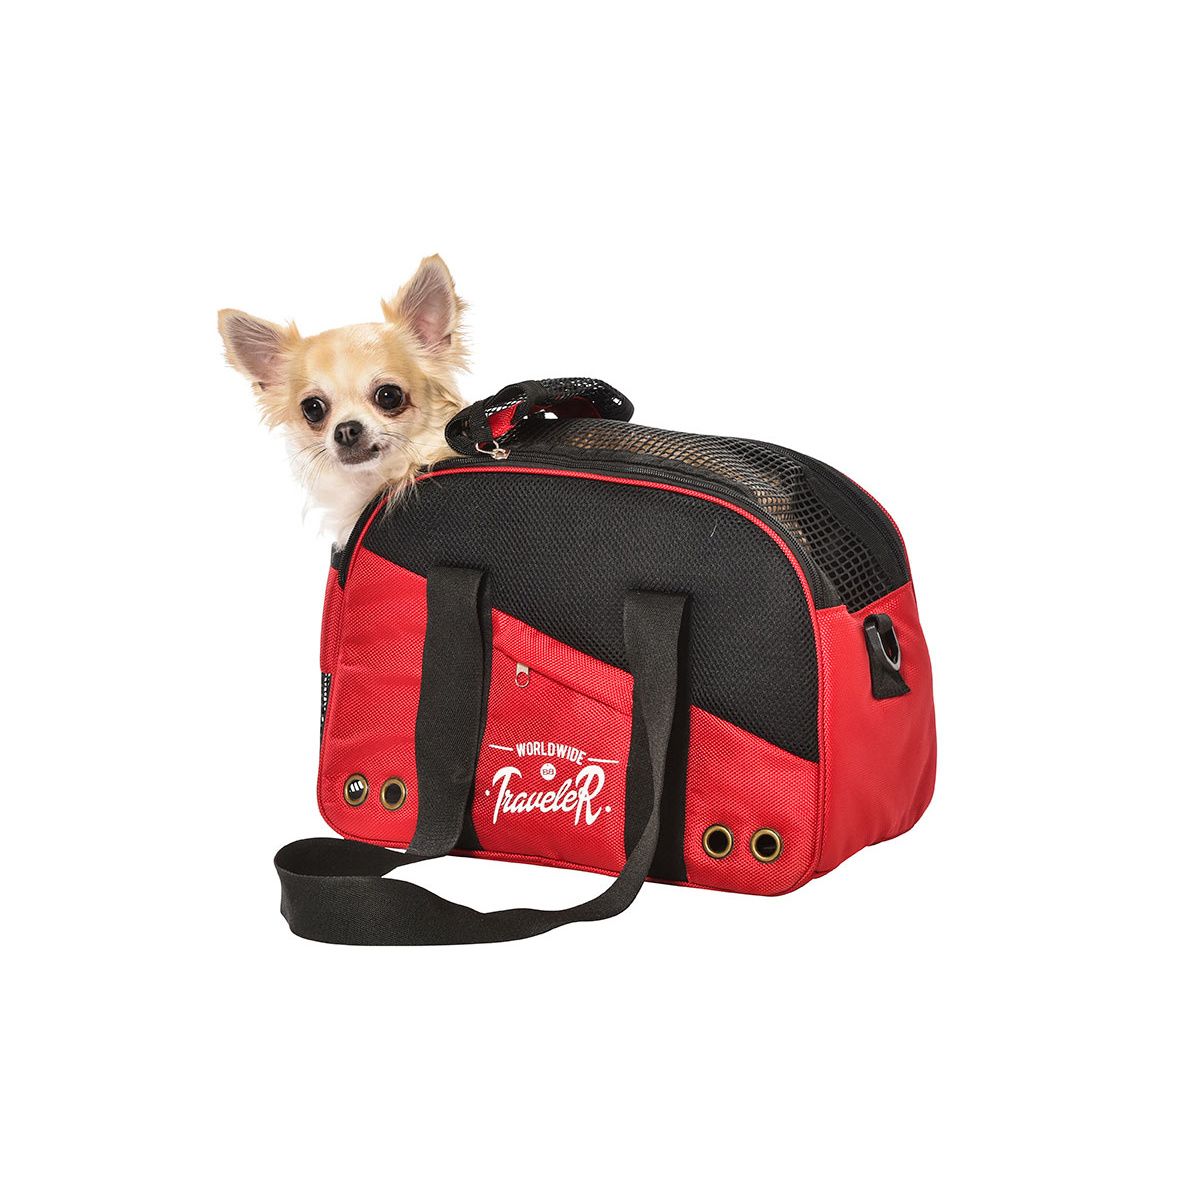 SAC PACK - Transport - Bobby - Accessoires pour chien et chat